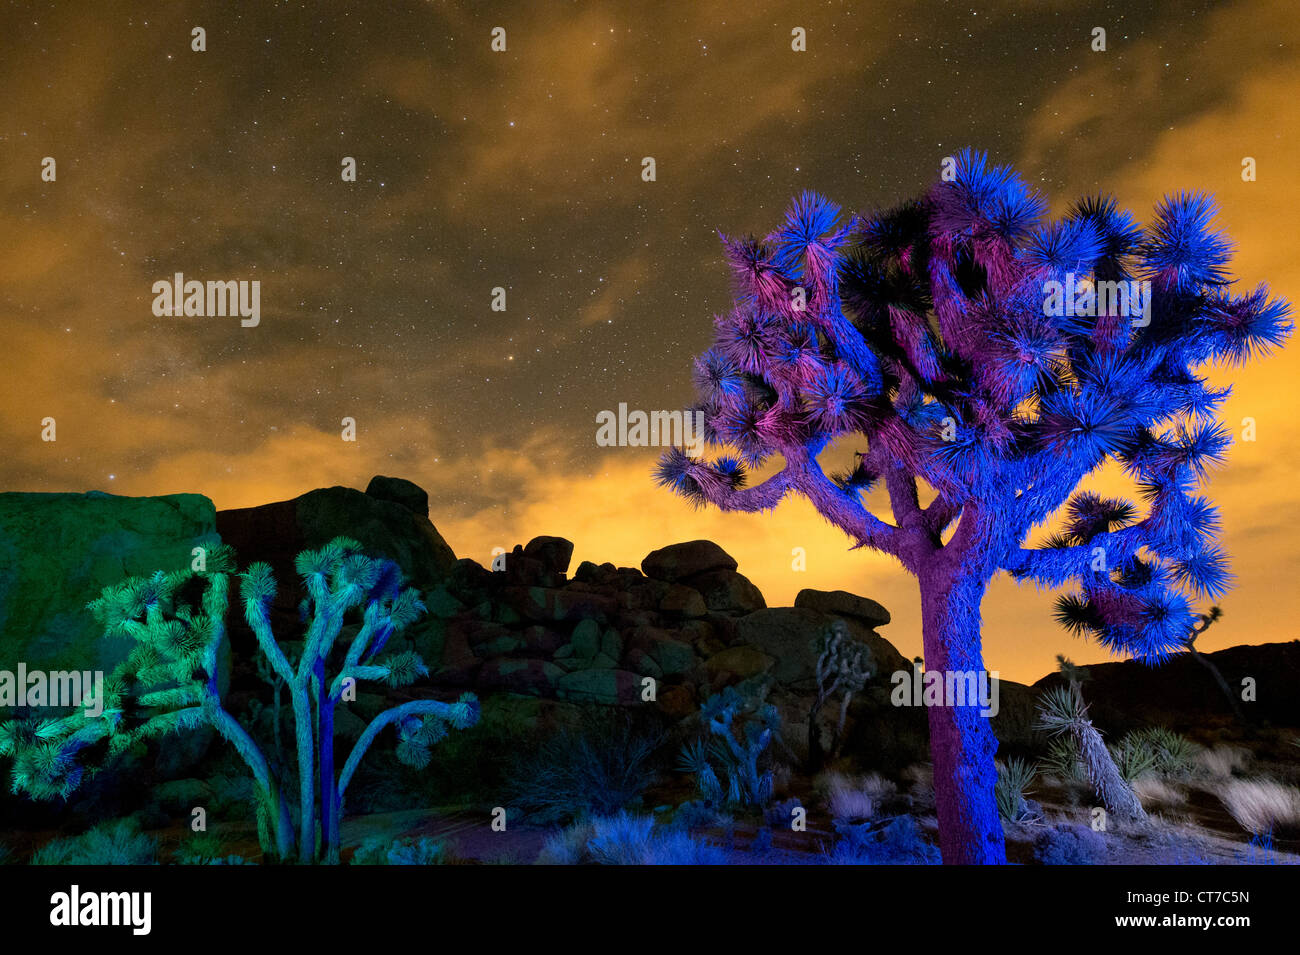 Luci colorate su alberi di Joshua di notte, Joshua Tree National Park, California, Stati Uniti d'America Foto Stock